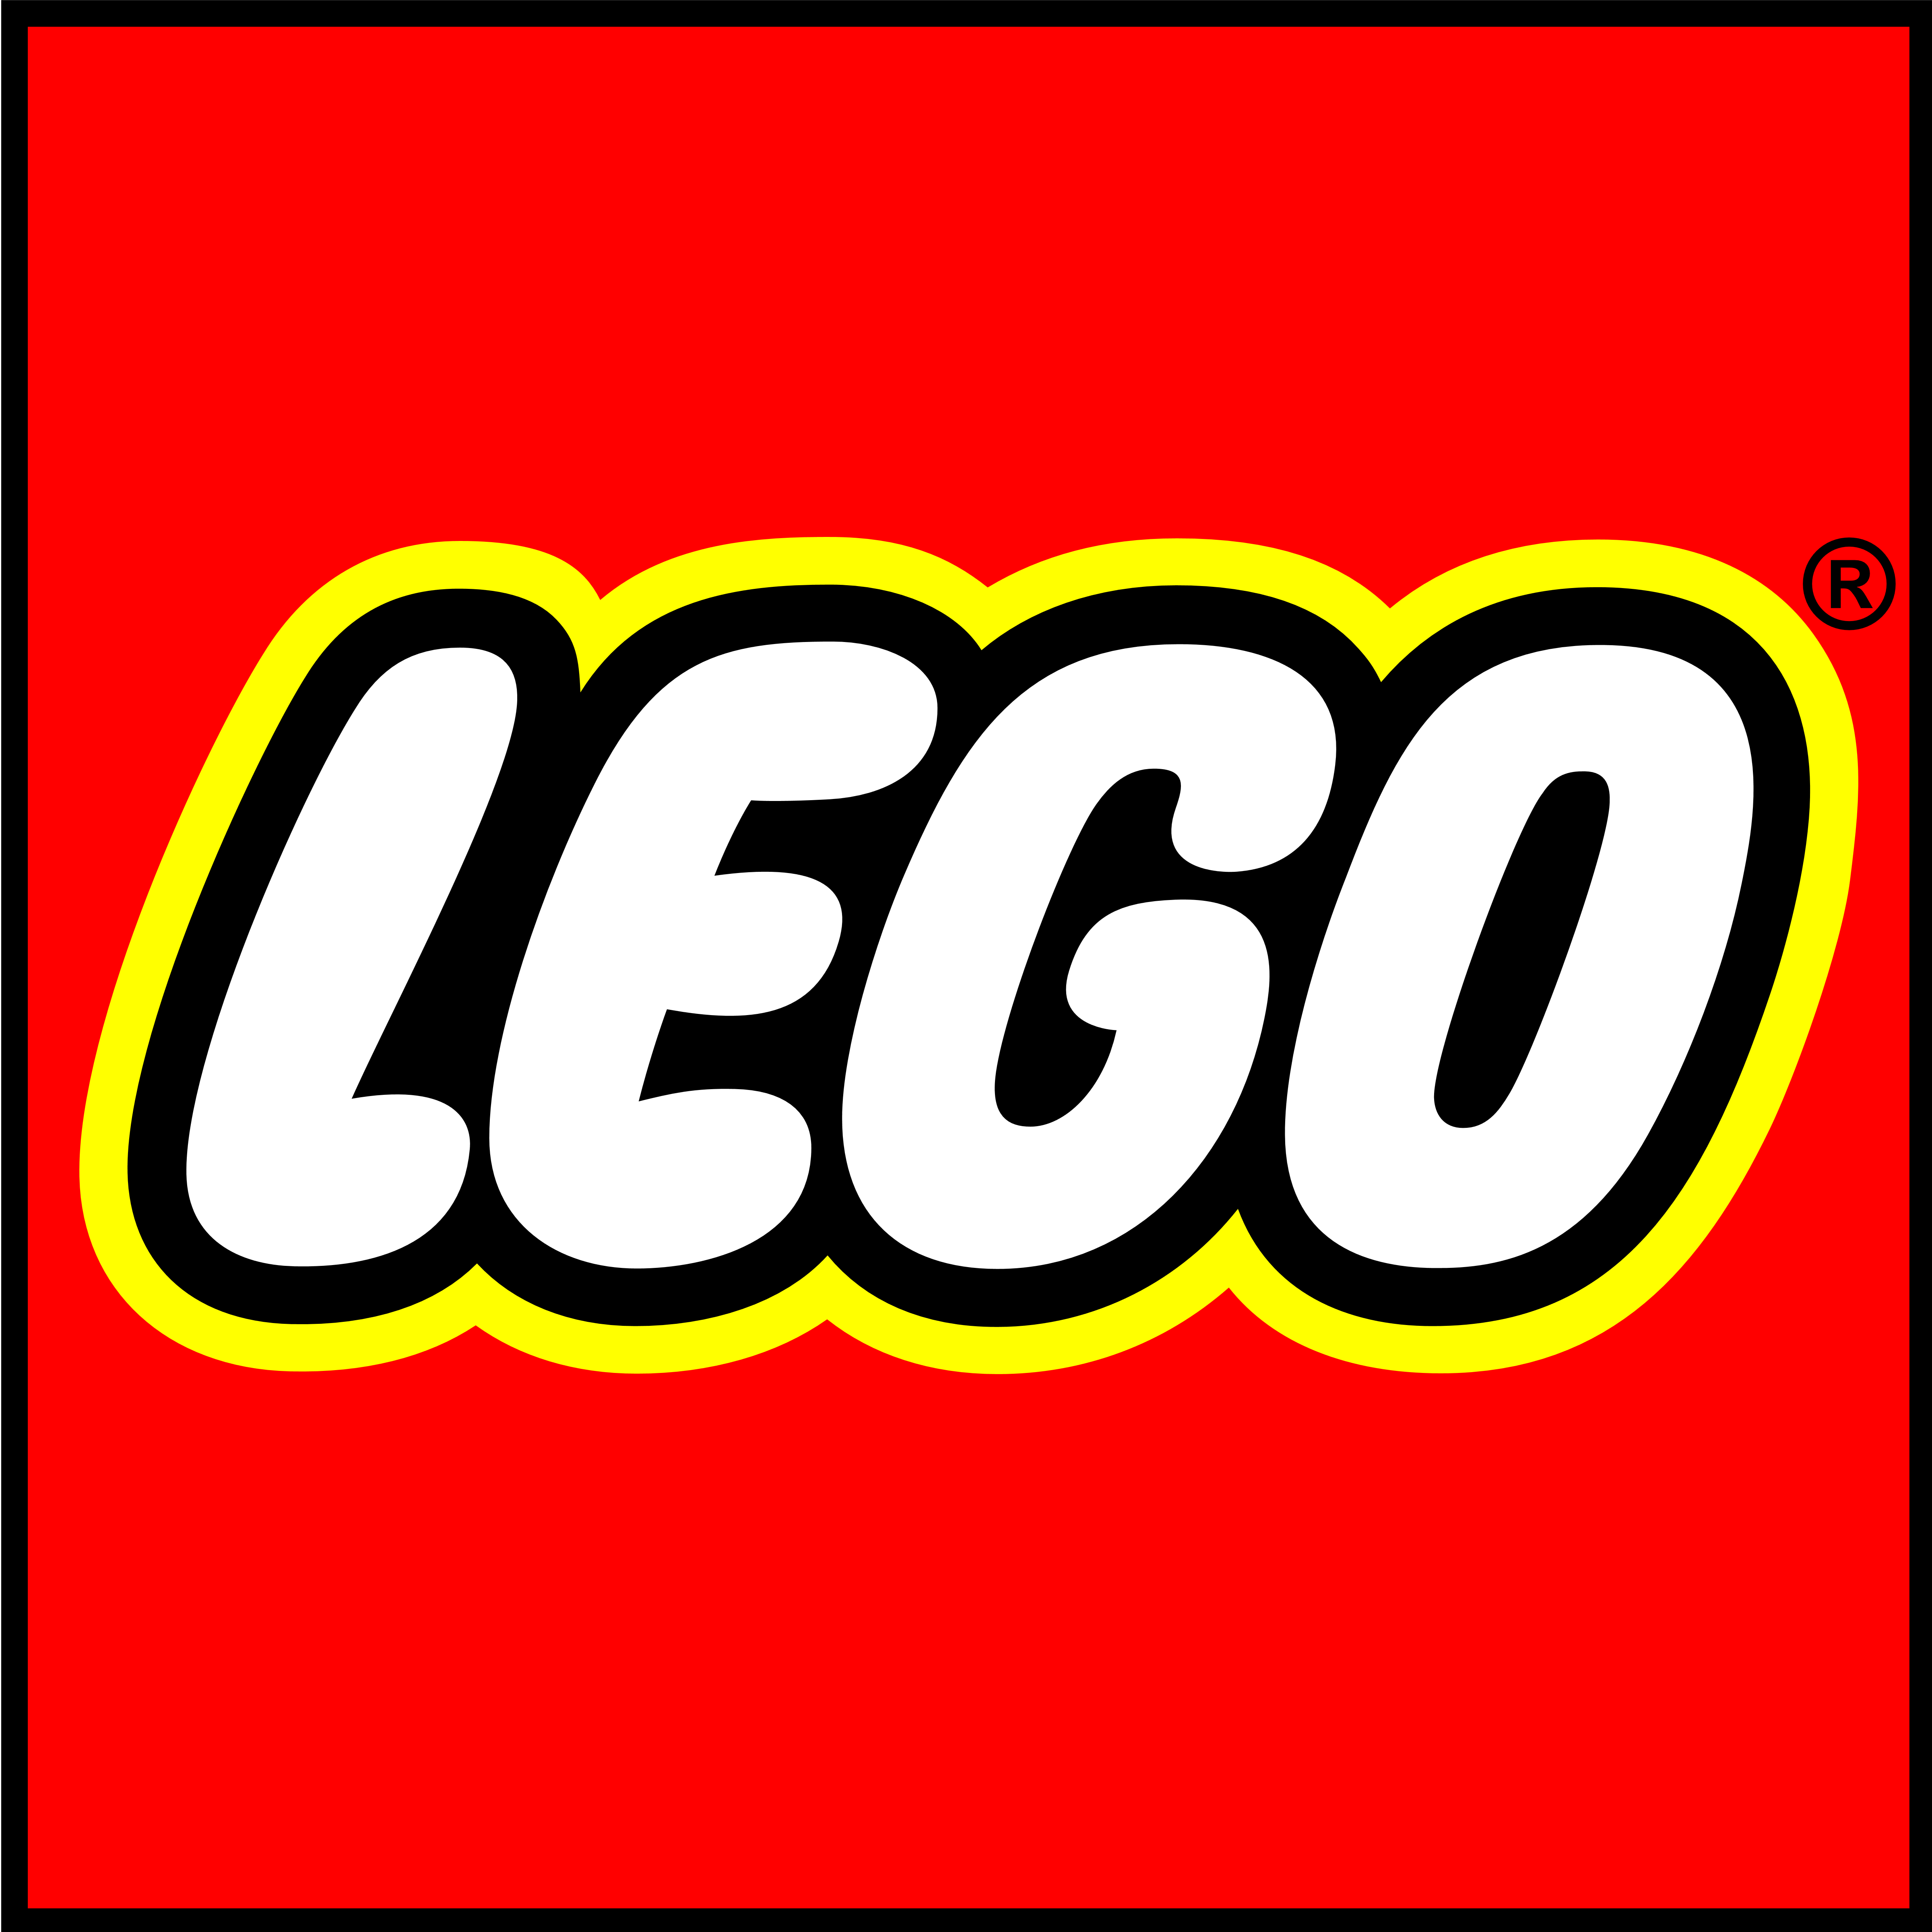 lego-logos-download